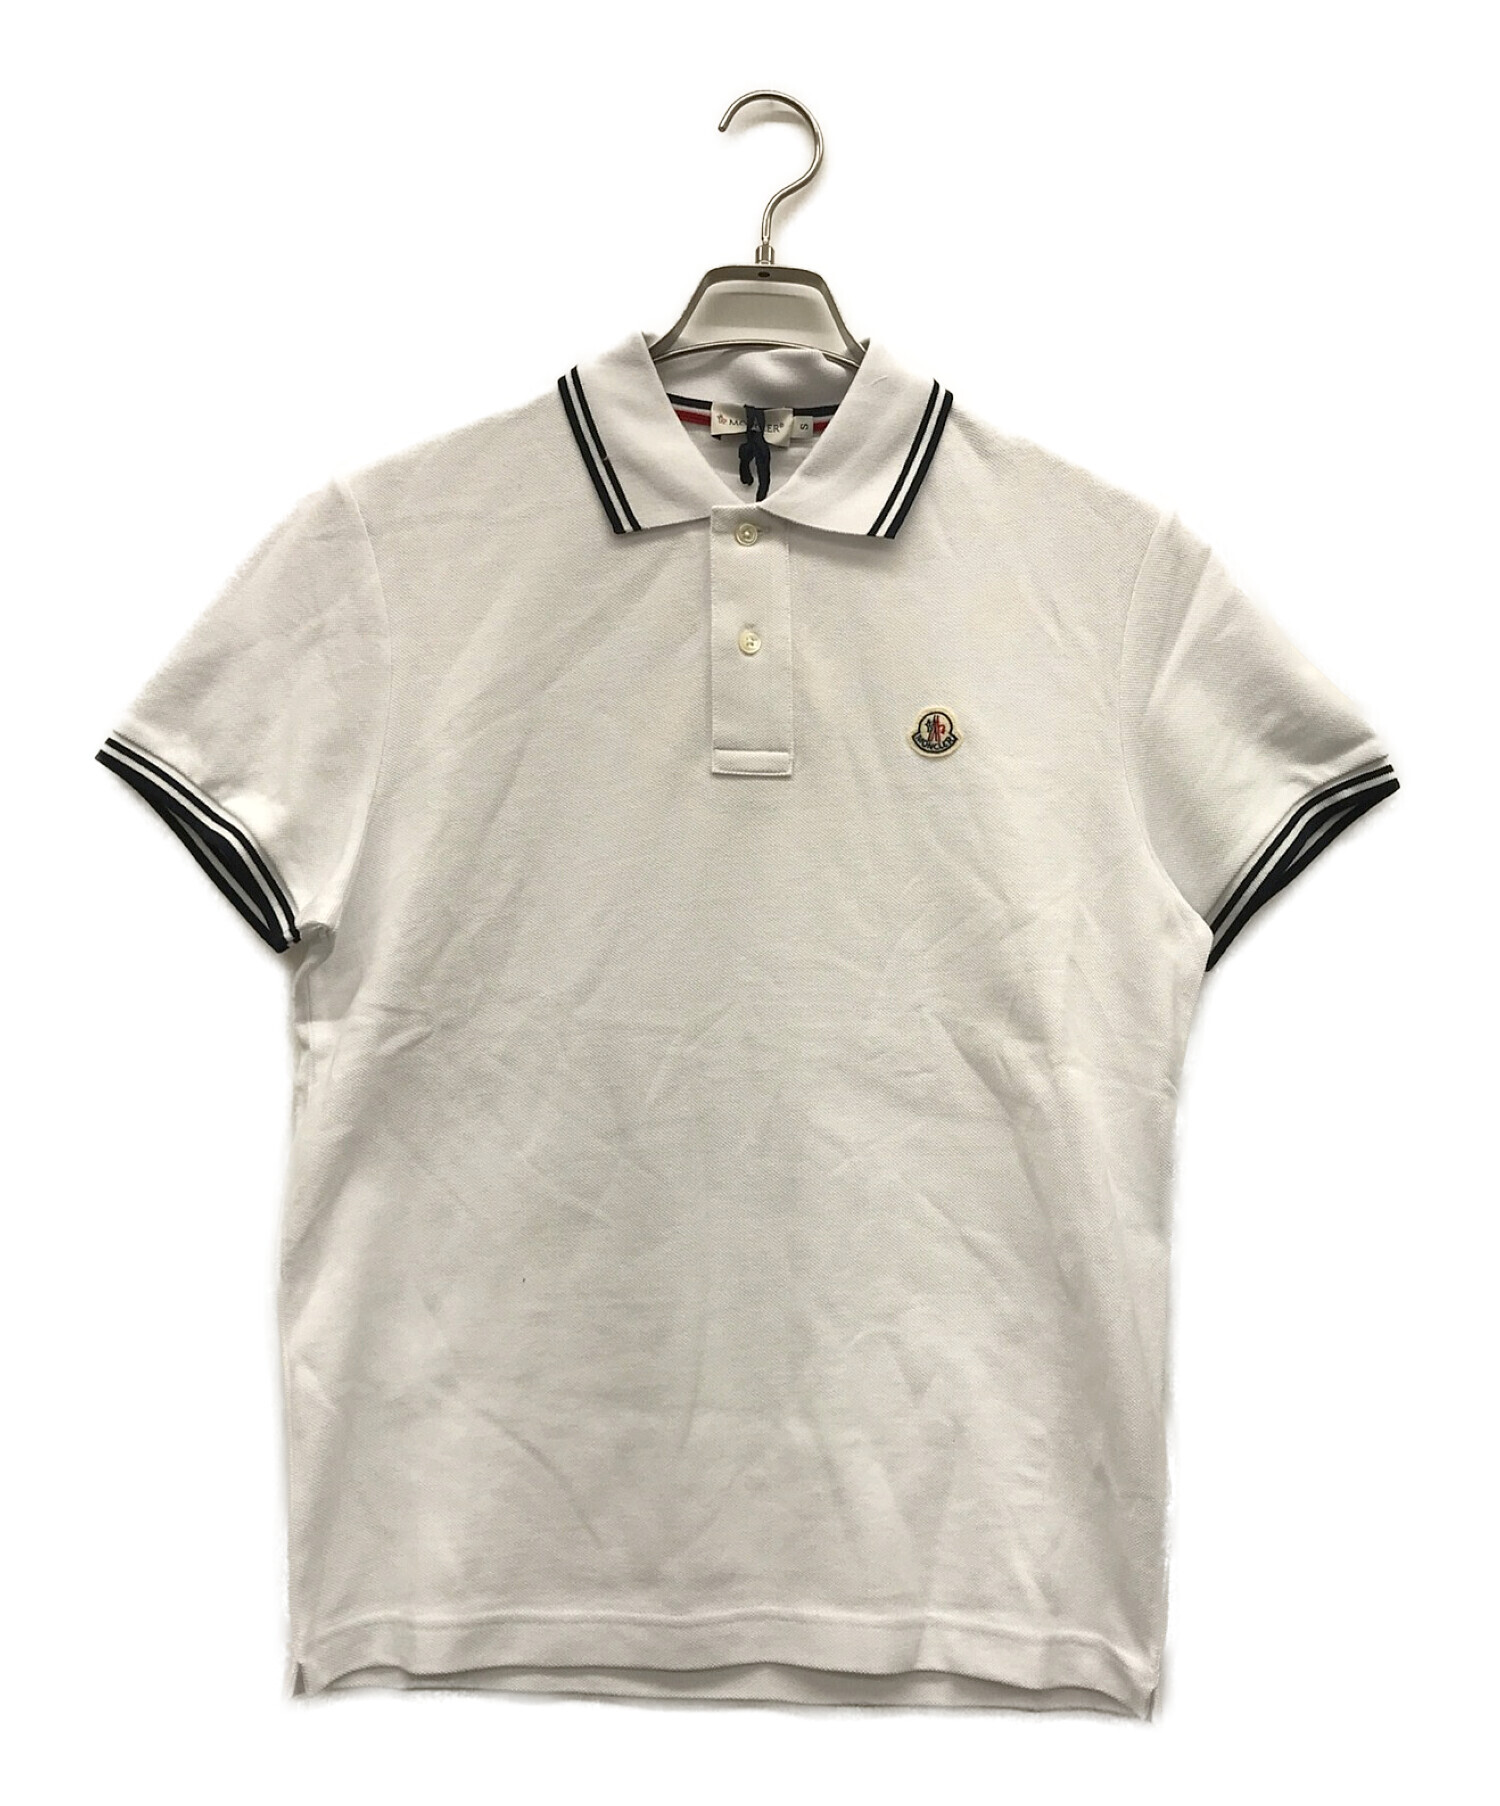 モンクレール デカワッペン ポロシャツ size M ホワイト - トップス